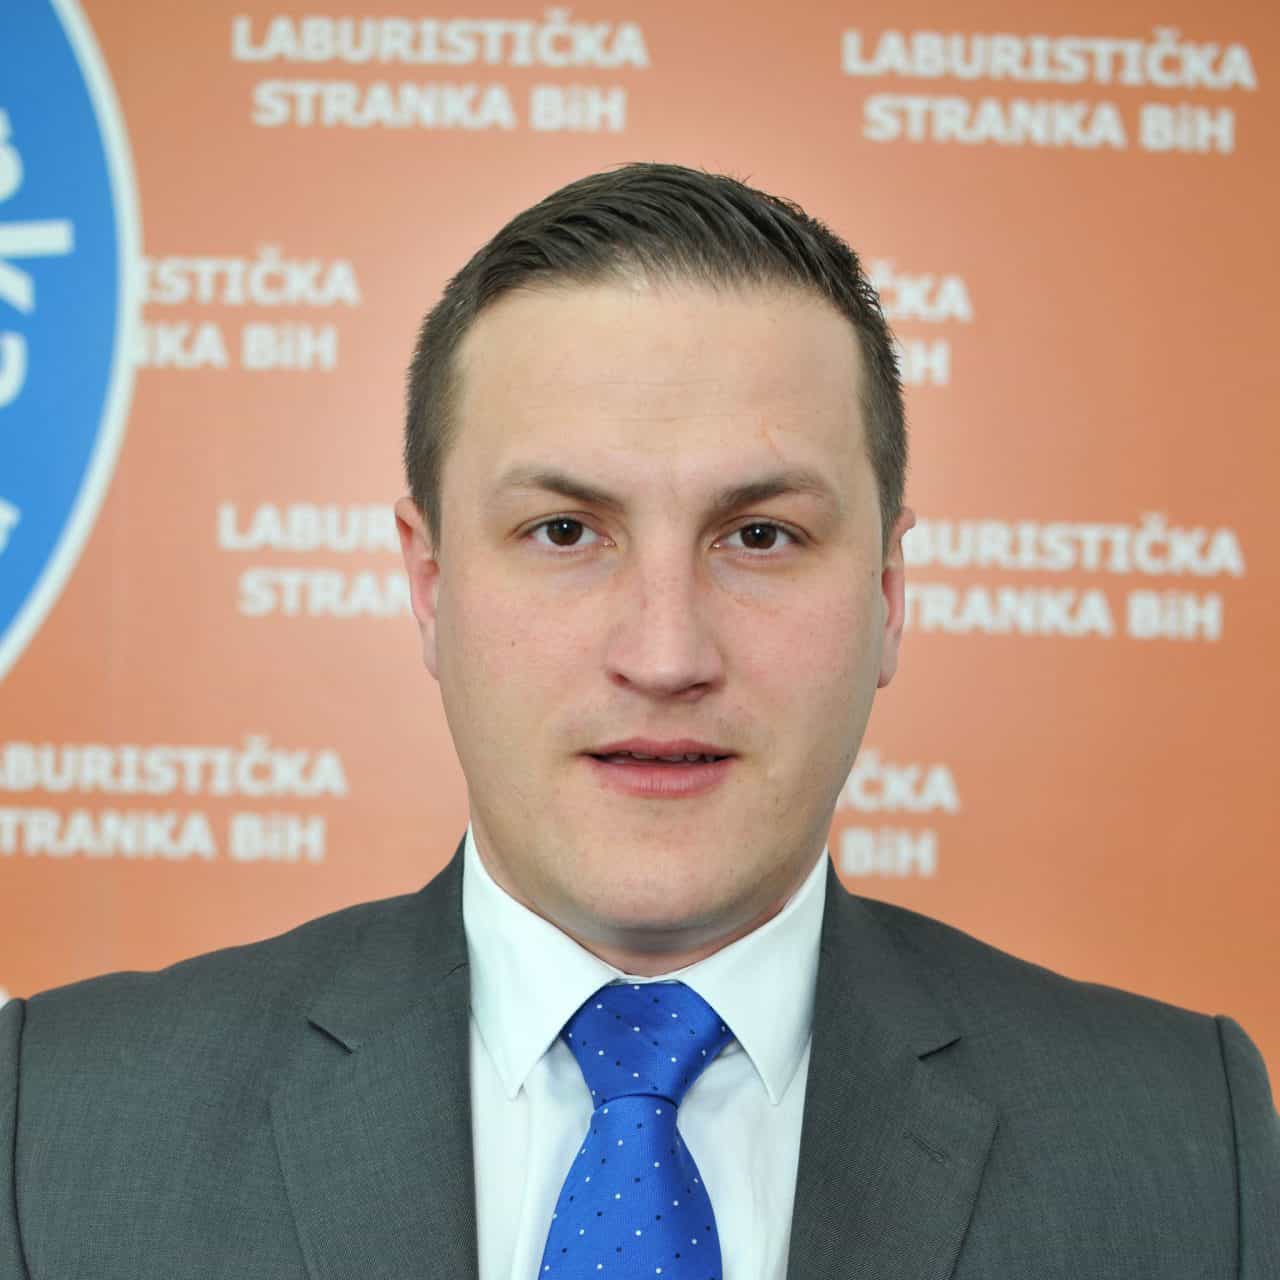 Predsjednik Komisije za statut i propise Amir Đogić uputio demantij na današnje saopćenje tri člana Komisije